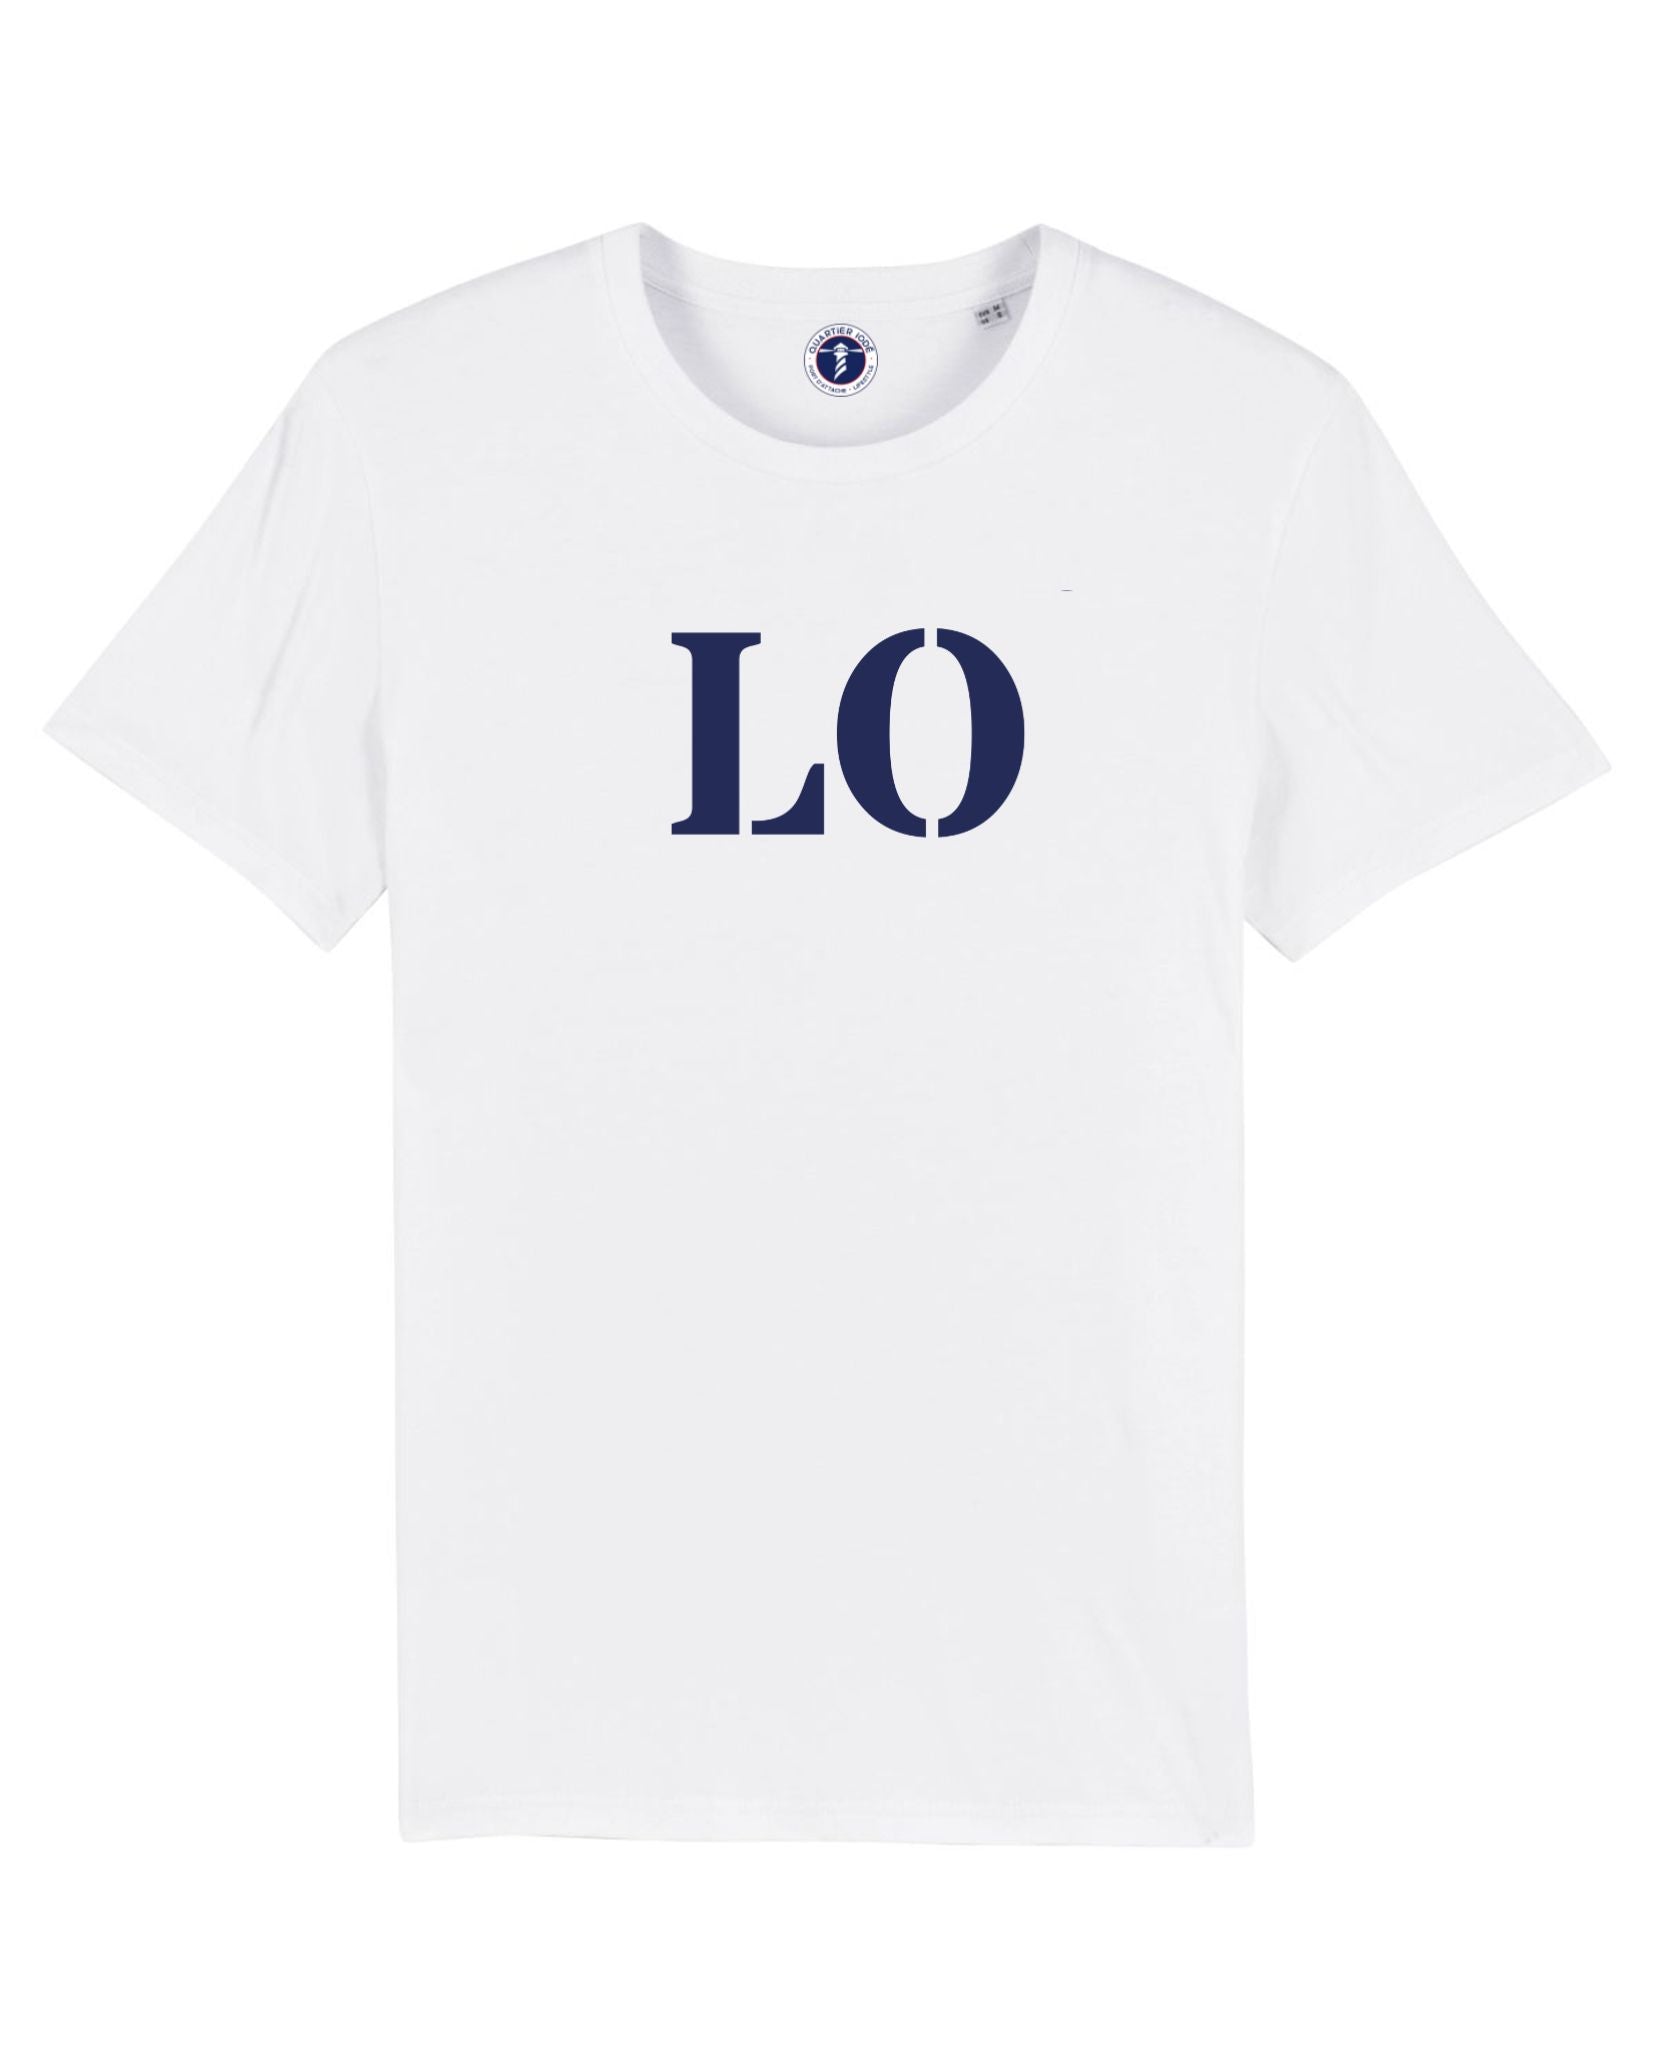 Supporter de Lorient ! offrez à votre enfant ce joli Tshirt en coton bio de la marque Quartier Iodé.